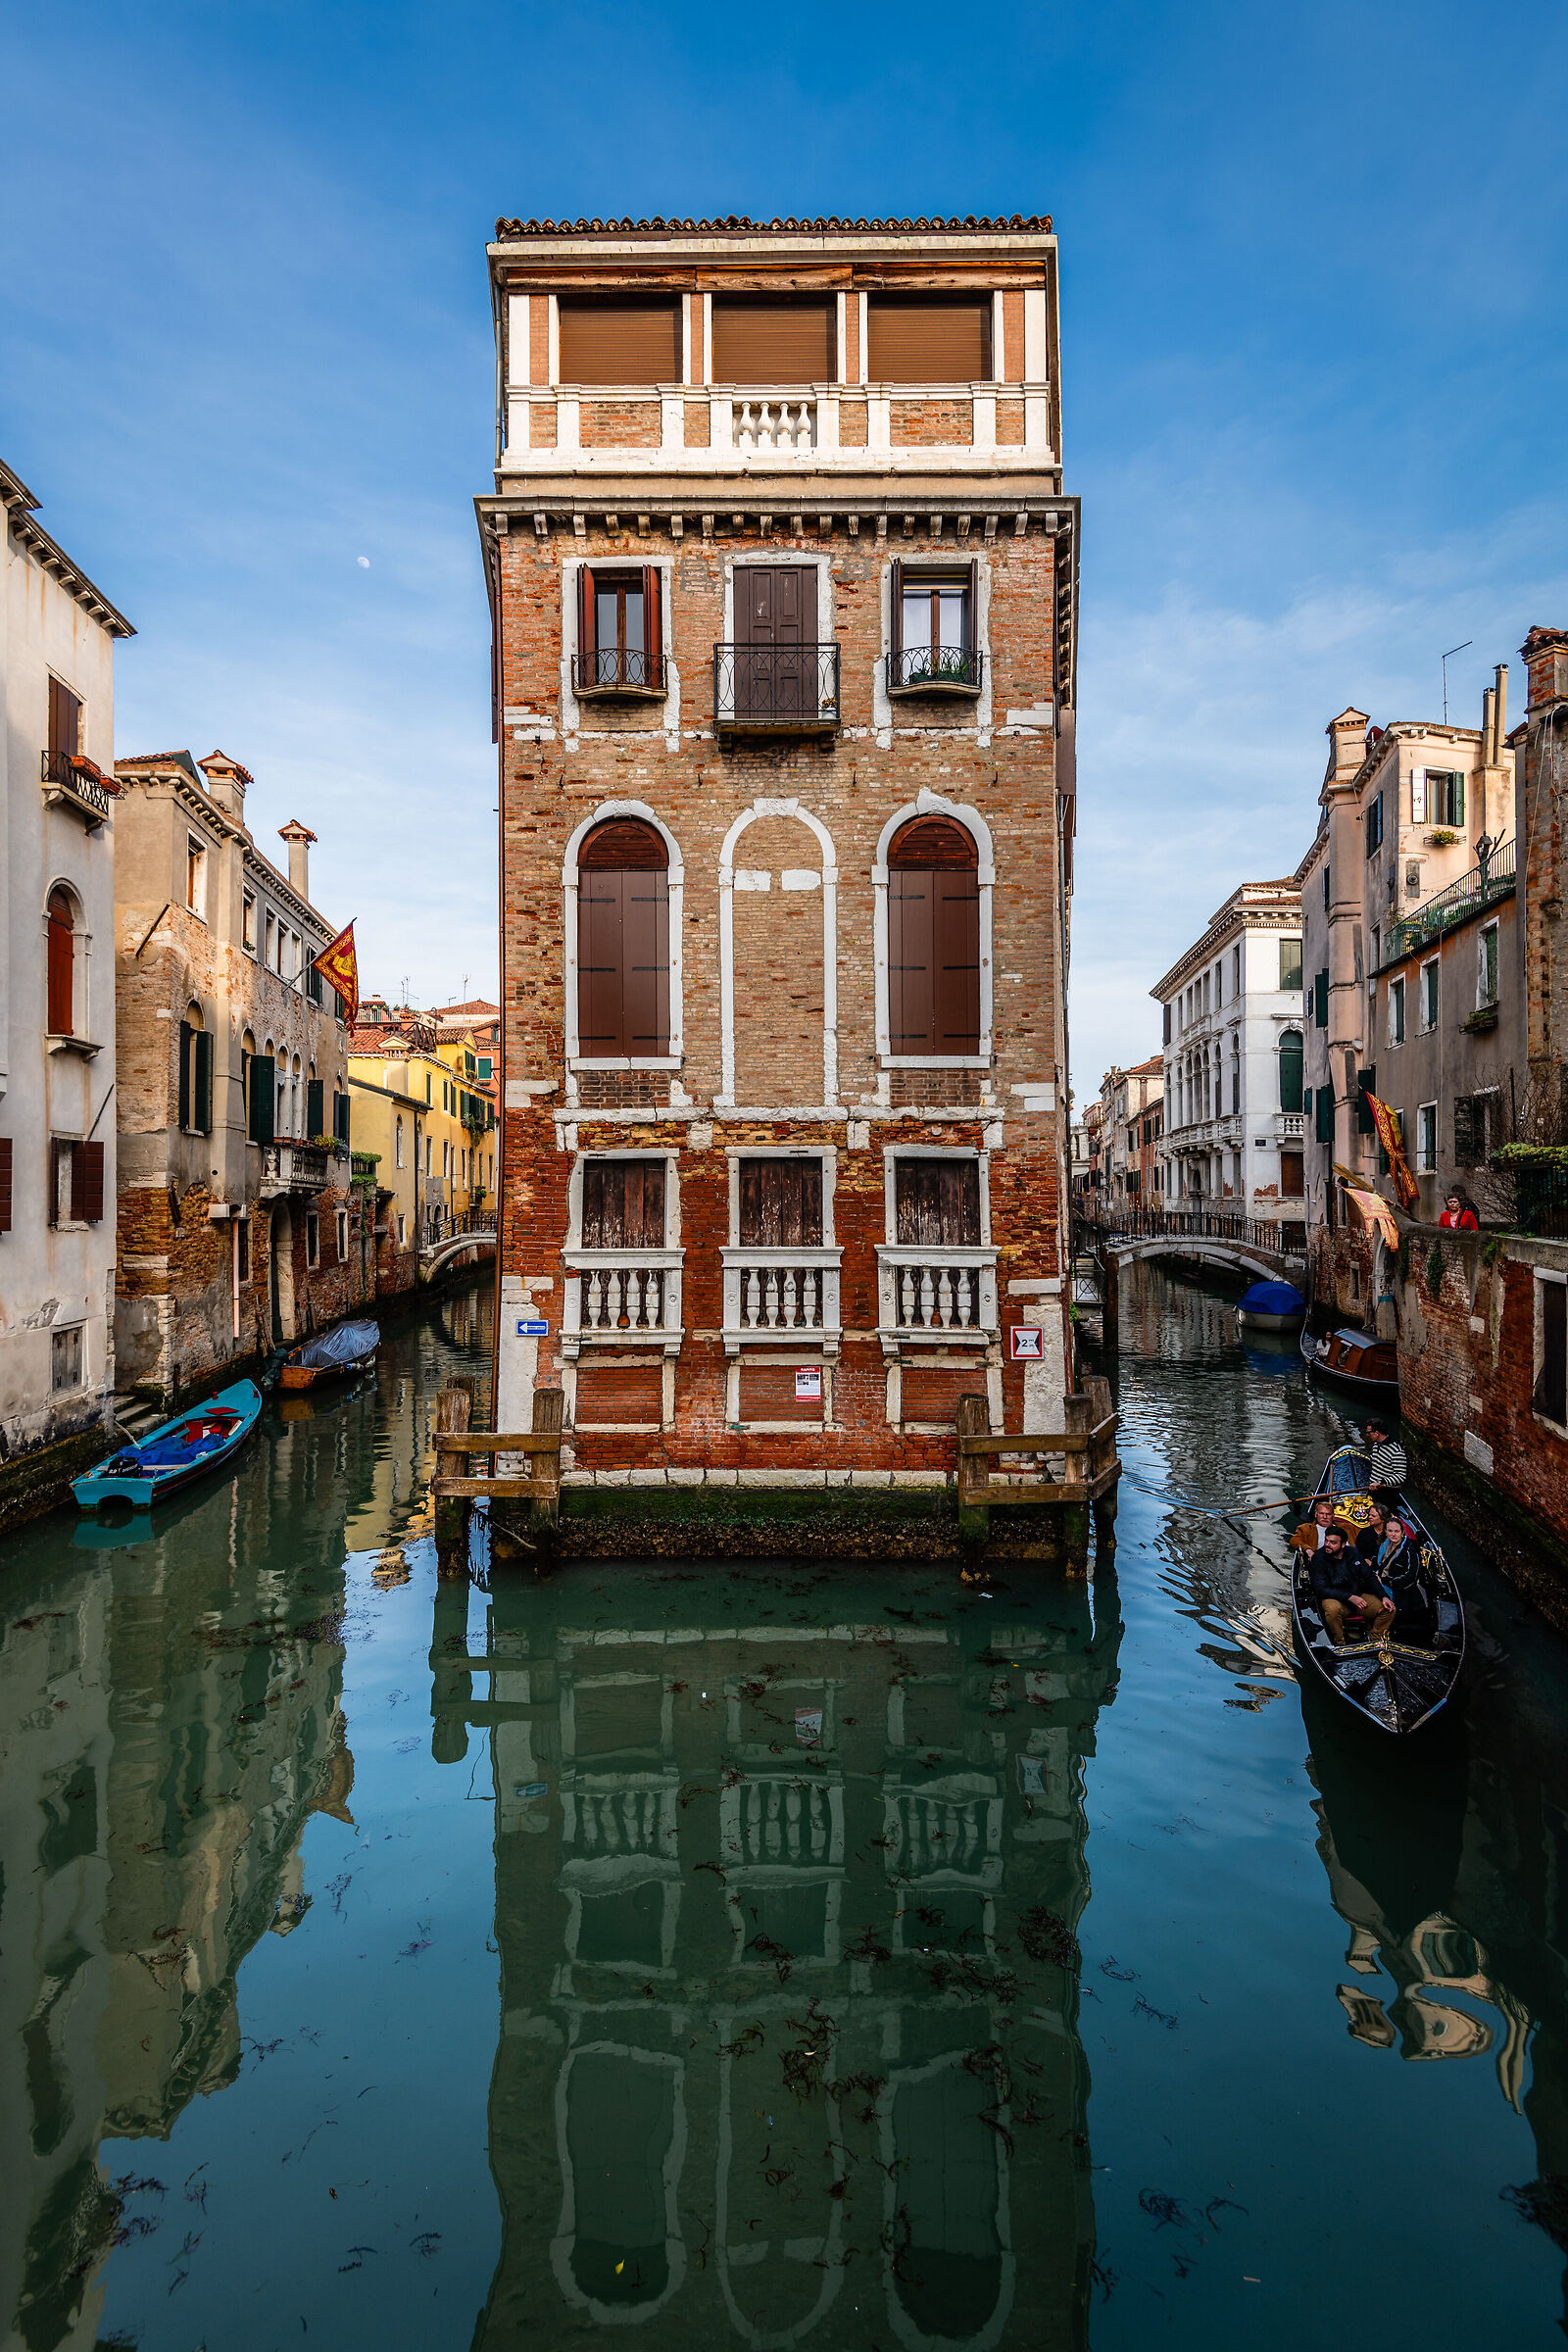 Palazzo Tetta and the gondola...